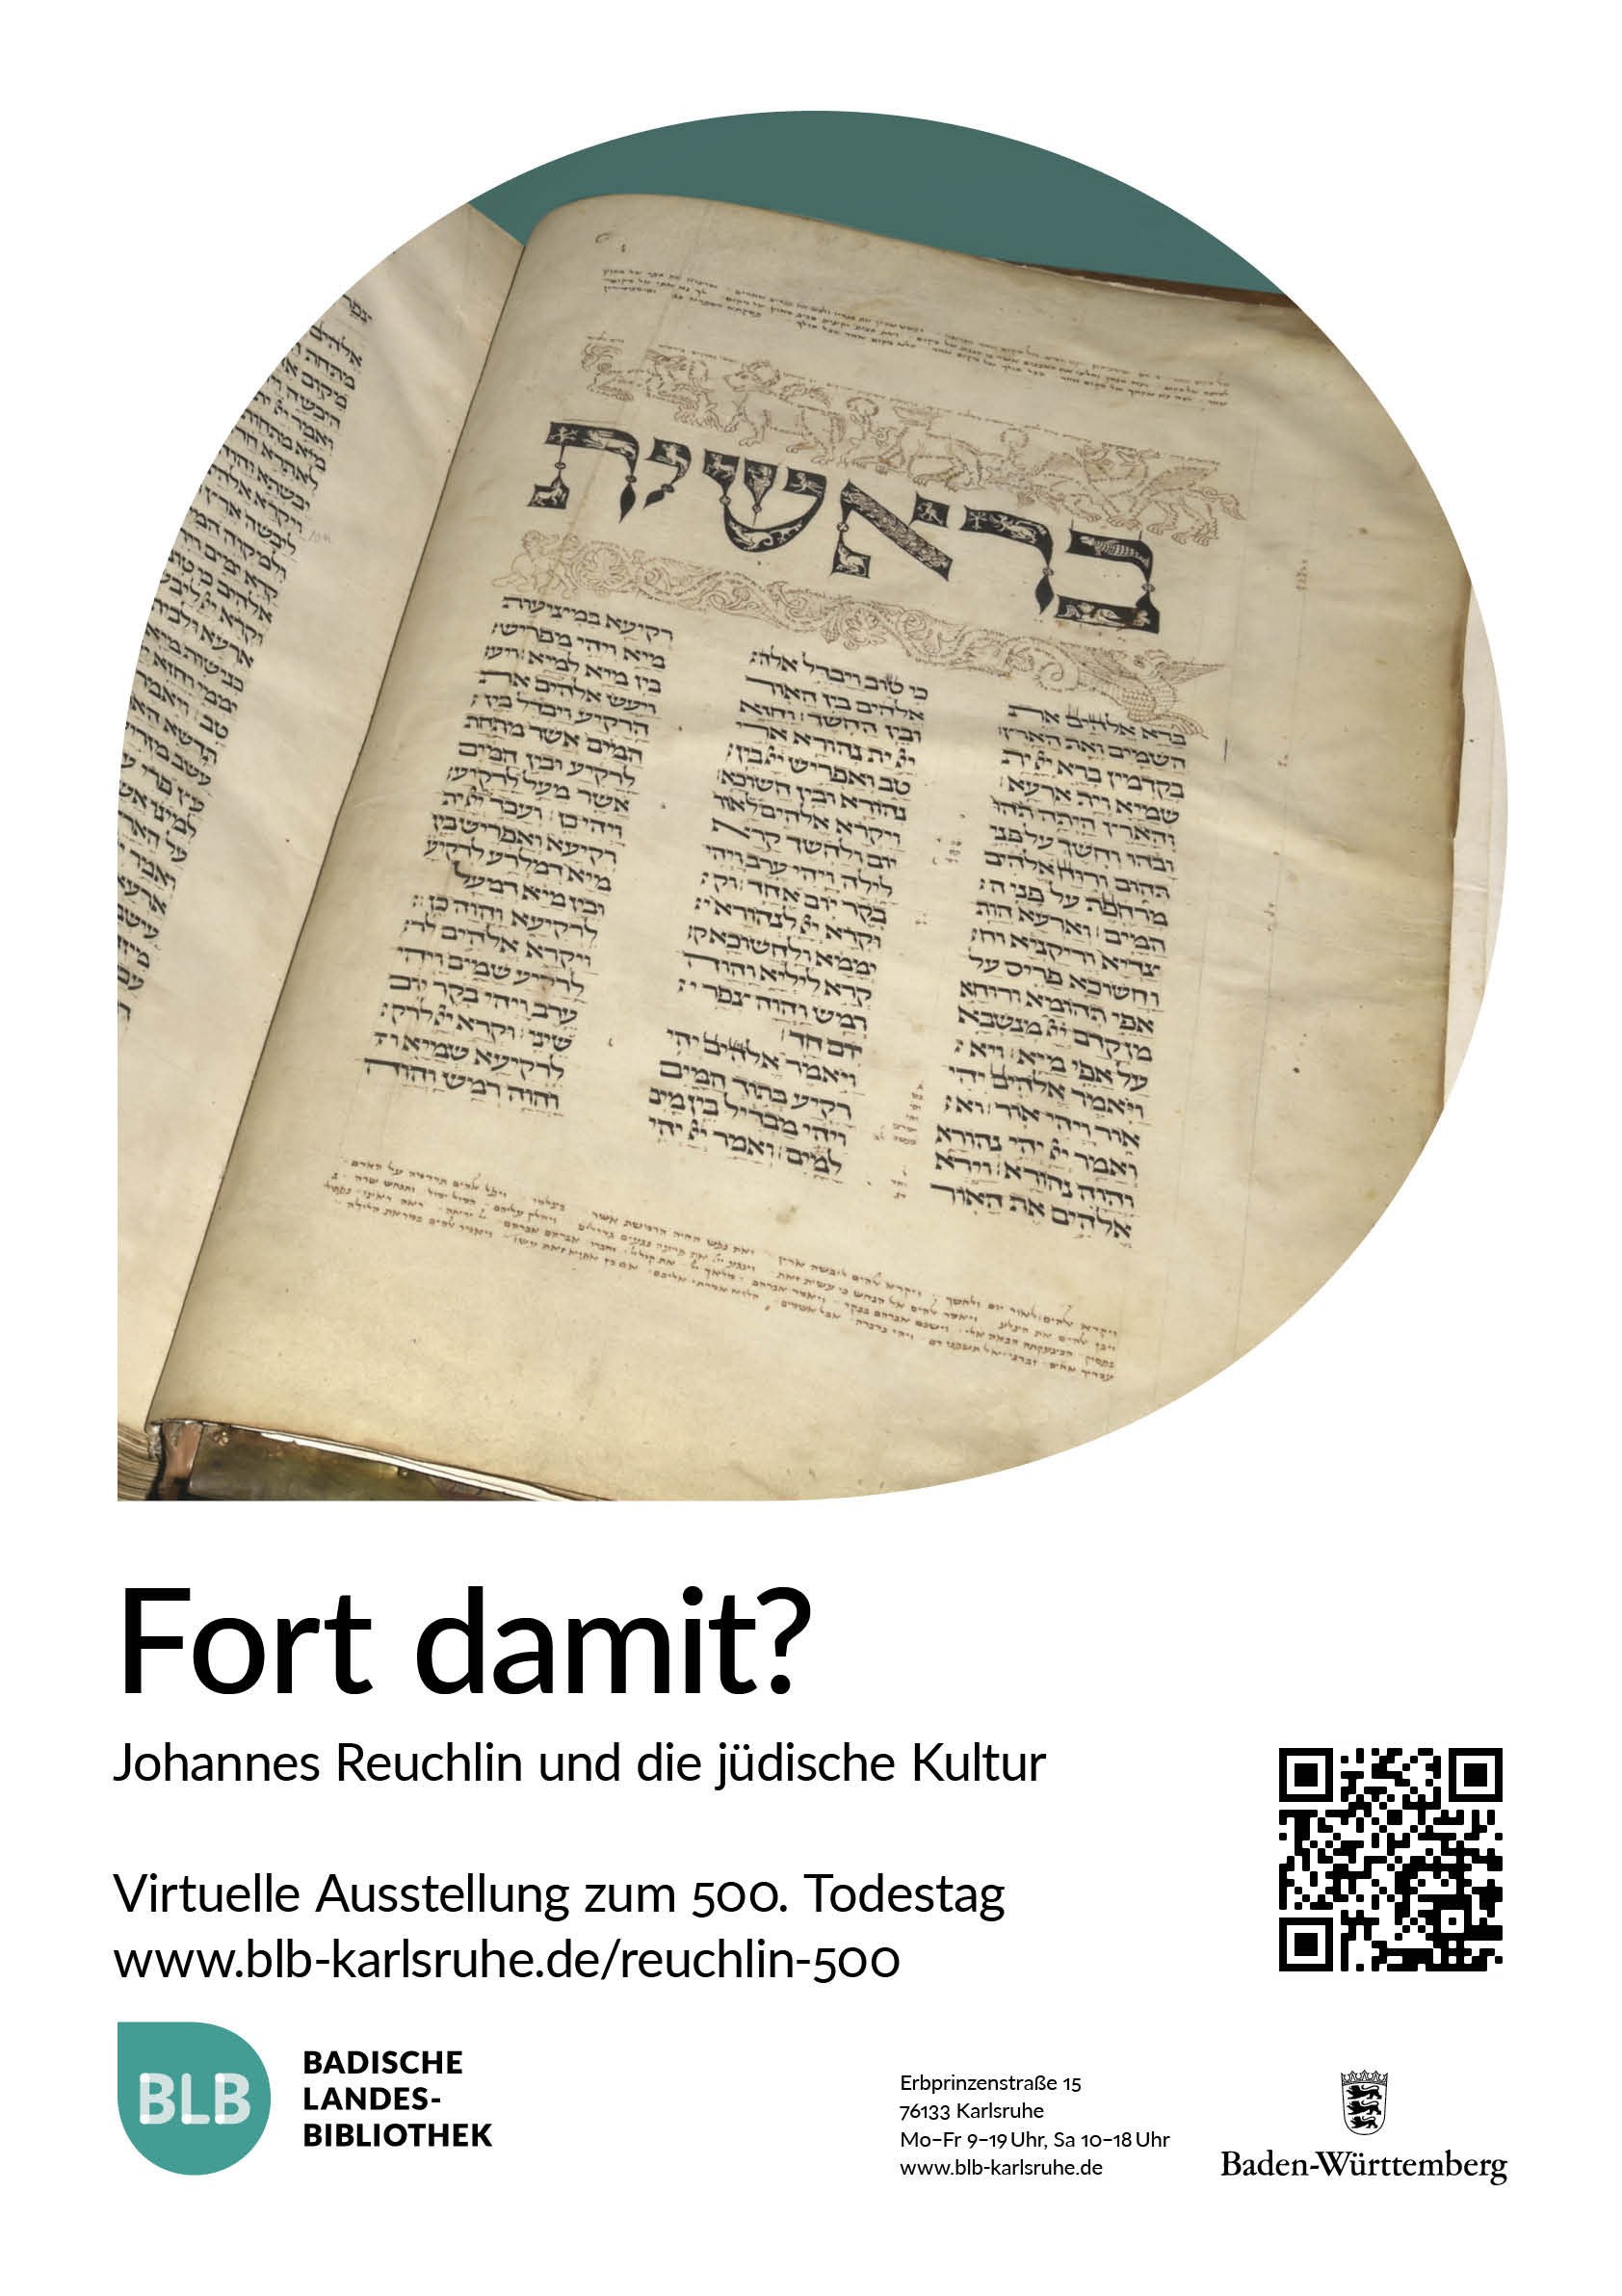 Zu sehen ist das Plakat für die virtuelle Ausstellung "Fort damit? Johannes Reuchlin und die jüdische Kultur" mit einem Ausschnitt einer hebräischen Handschrift.